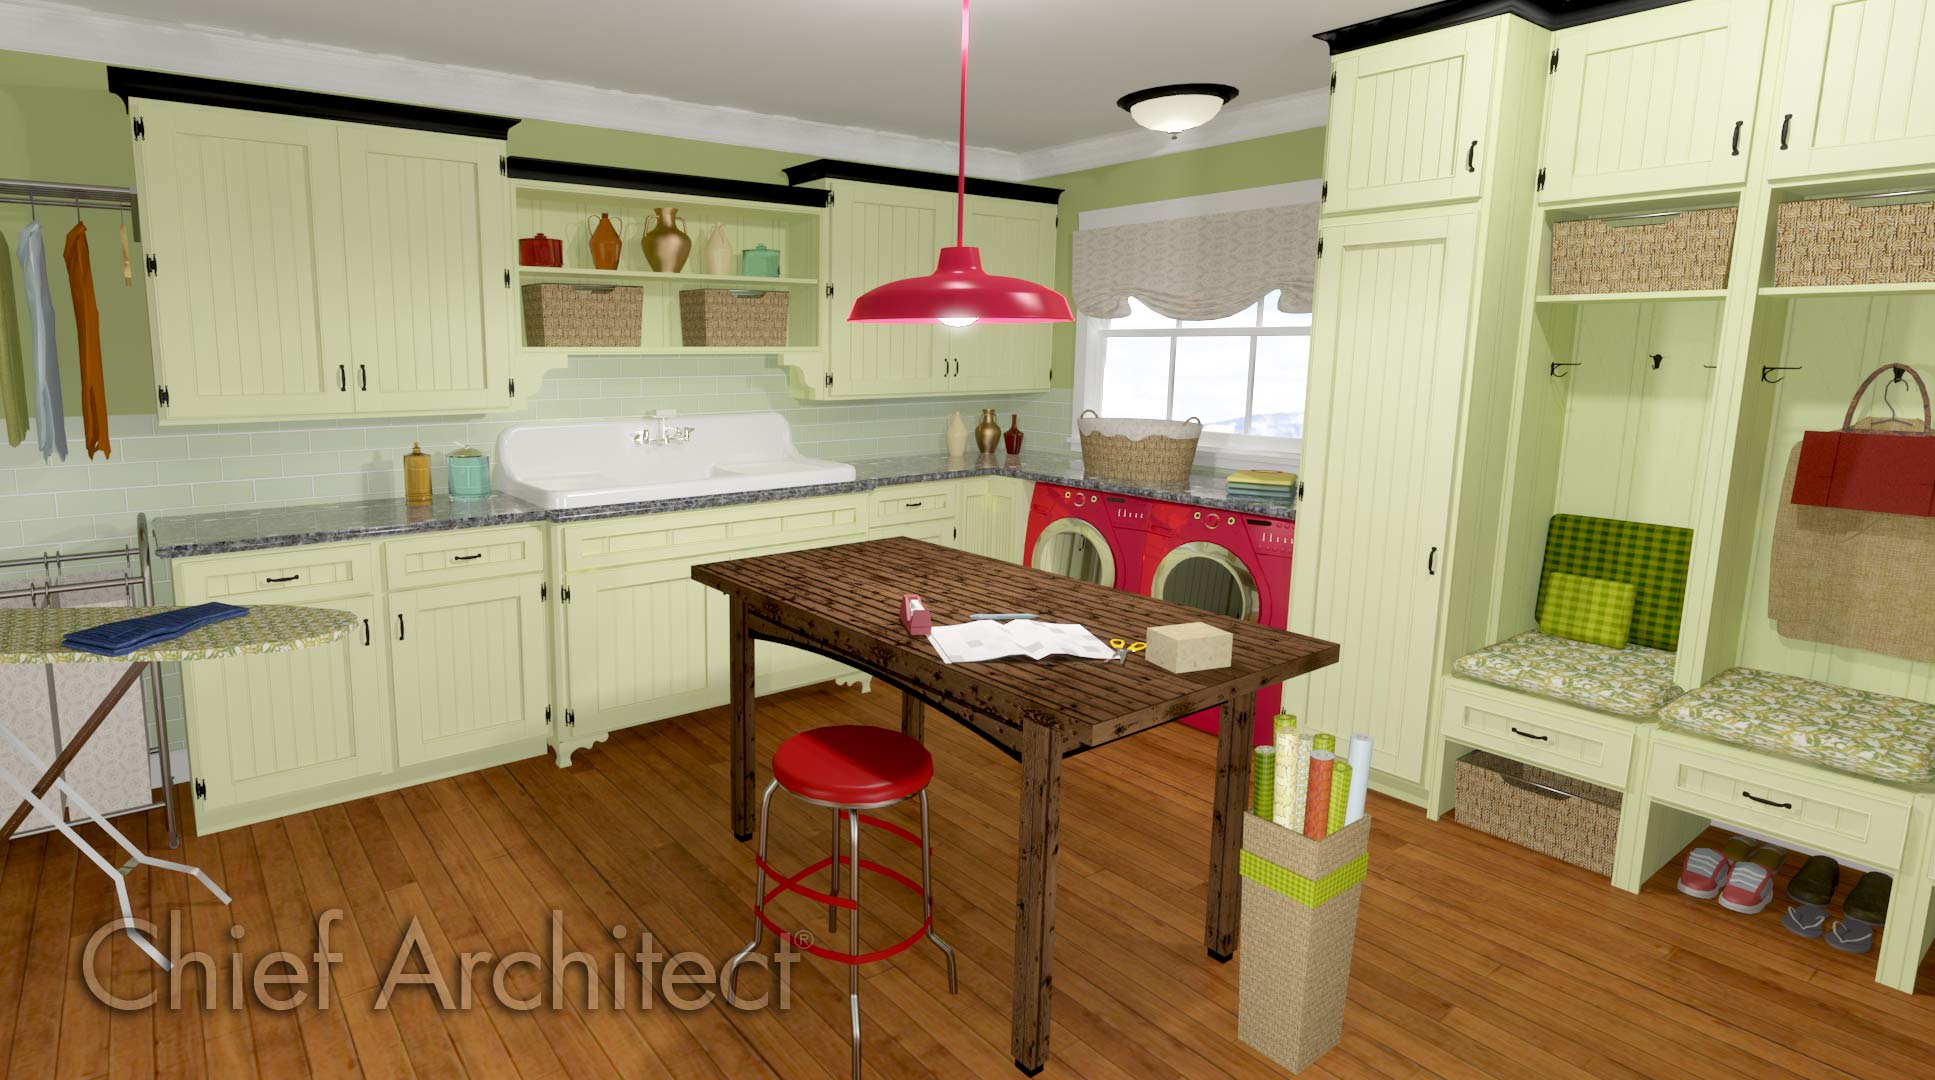 download chief architect kitchen